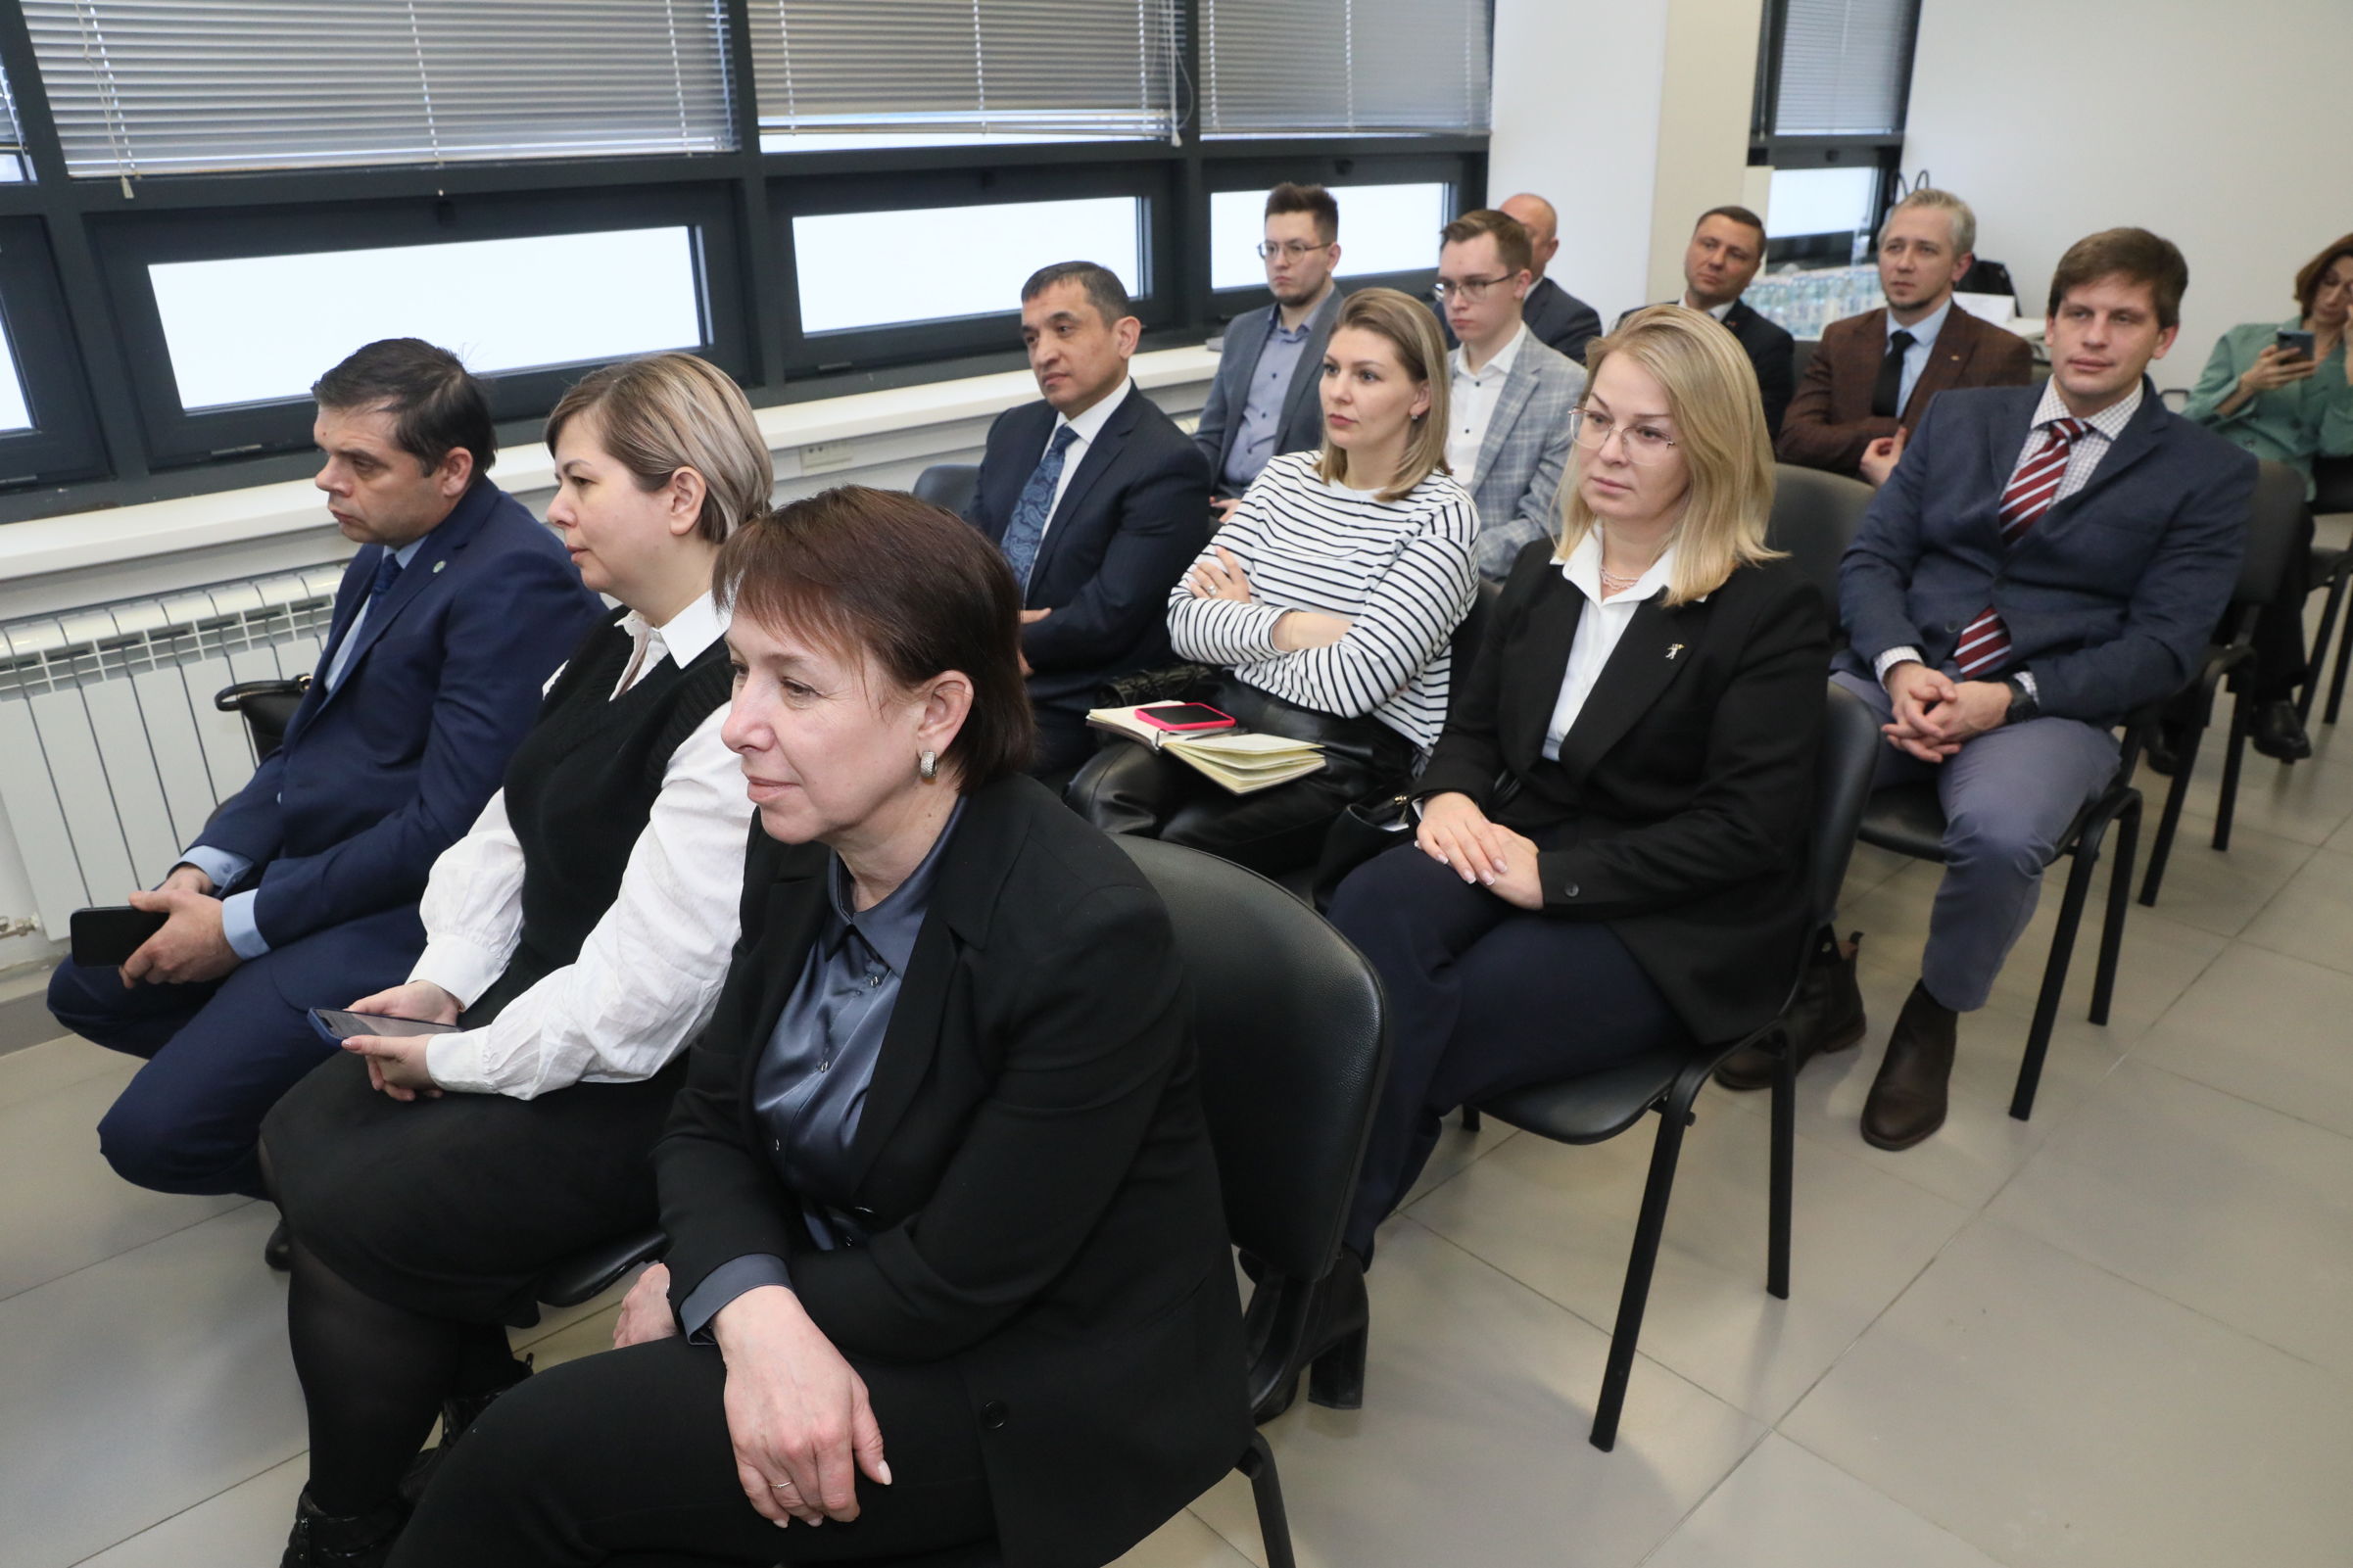 Промышленный потенциал Ярославской области представили делегации Евразийской экономической комиссии